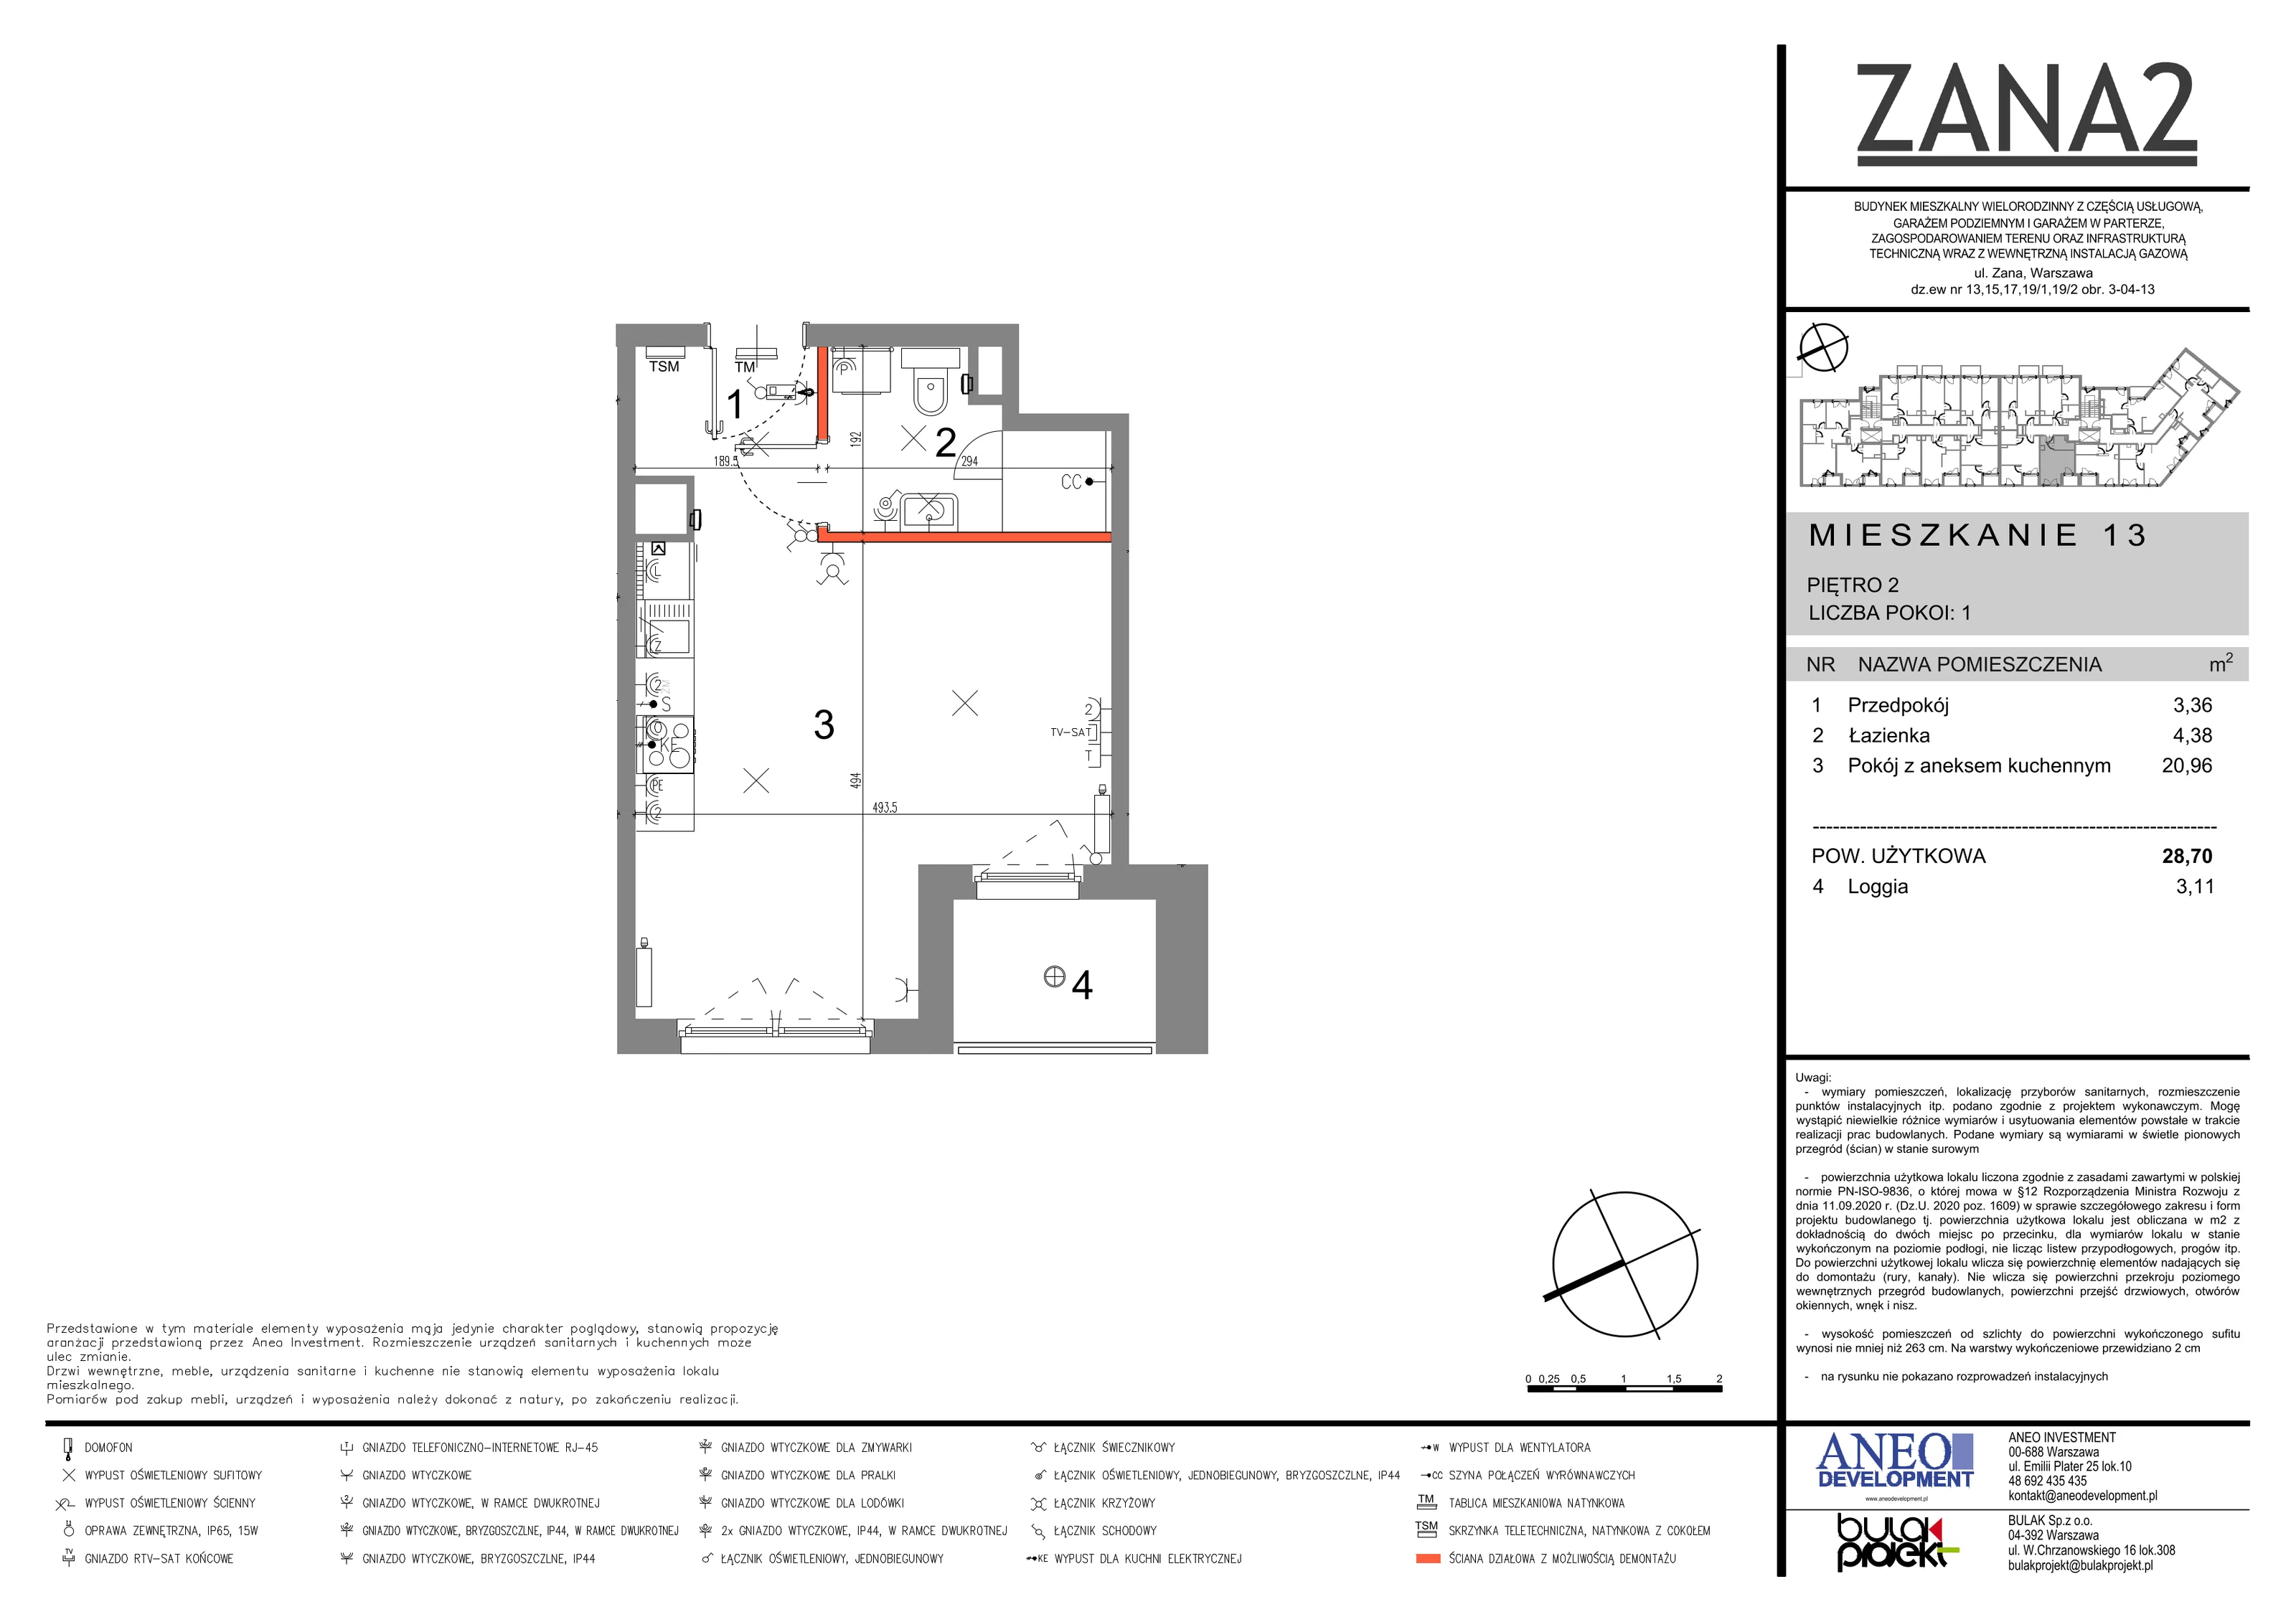 Mieszkanie 28,70 m², piętro 2, oferta nr 13, Zana 2, Warszawa, Praga Południe, Gocławek, ul. Tomasza Zana